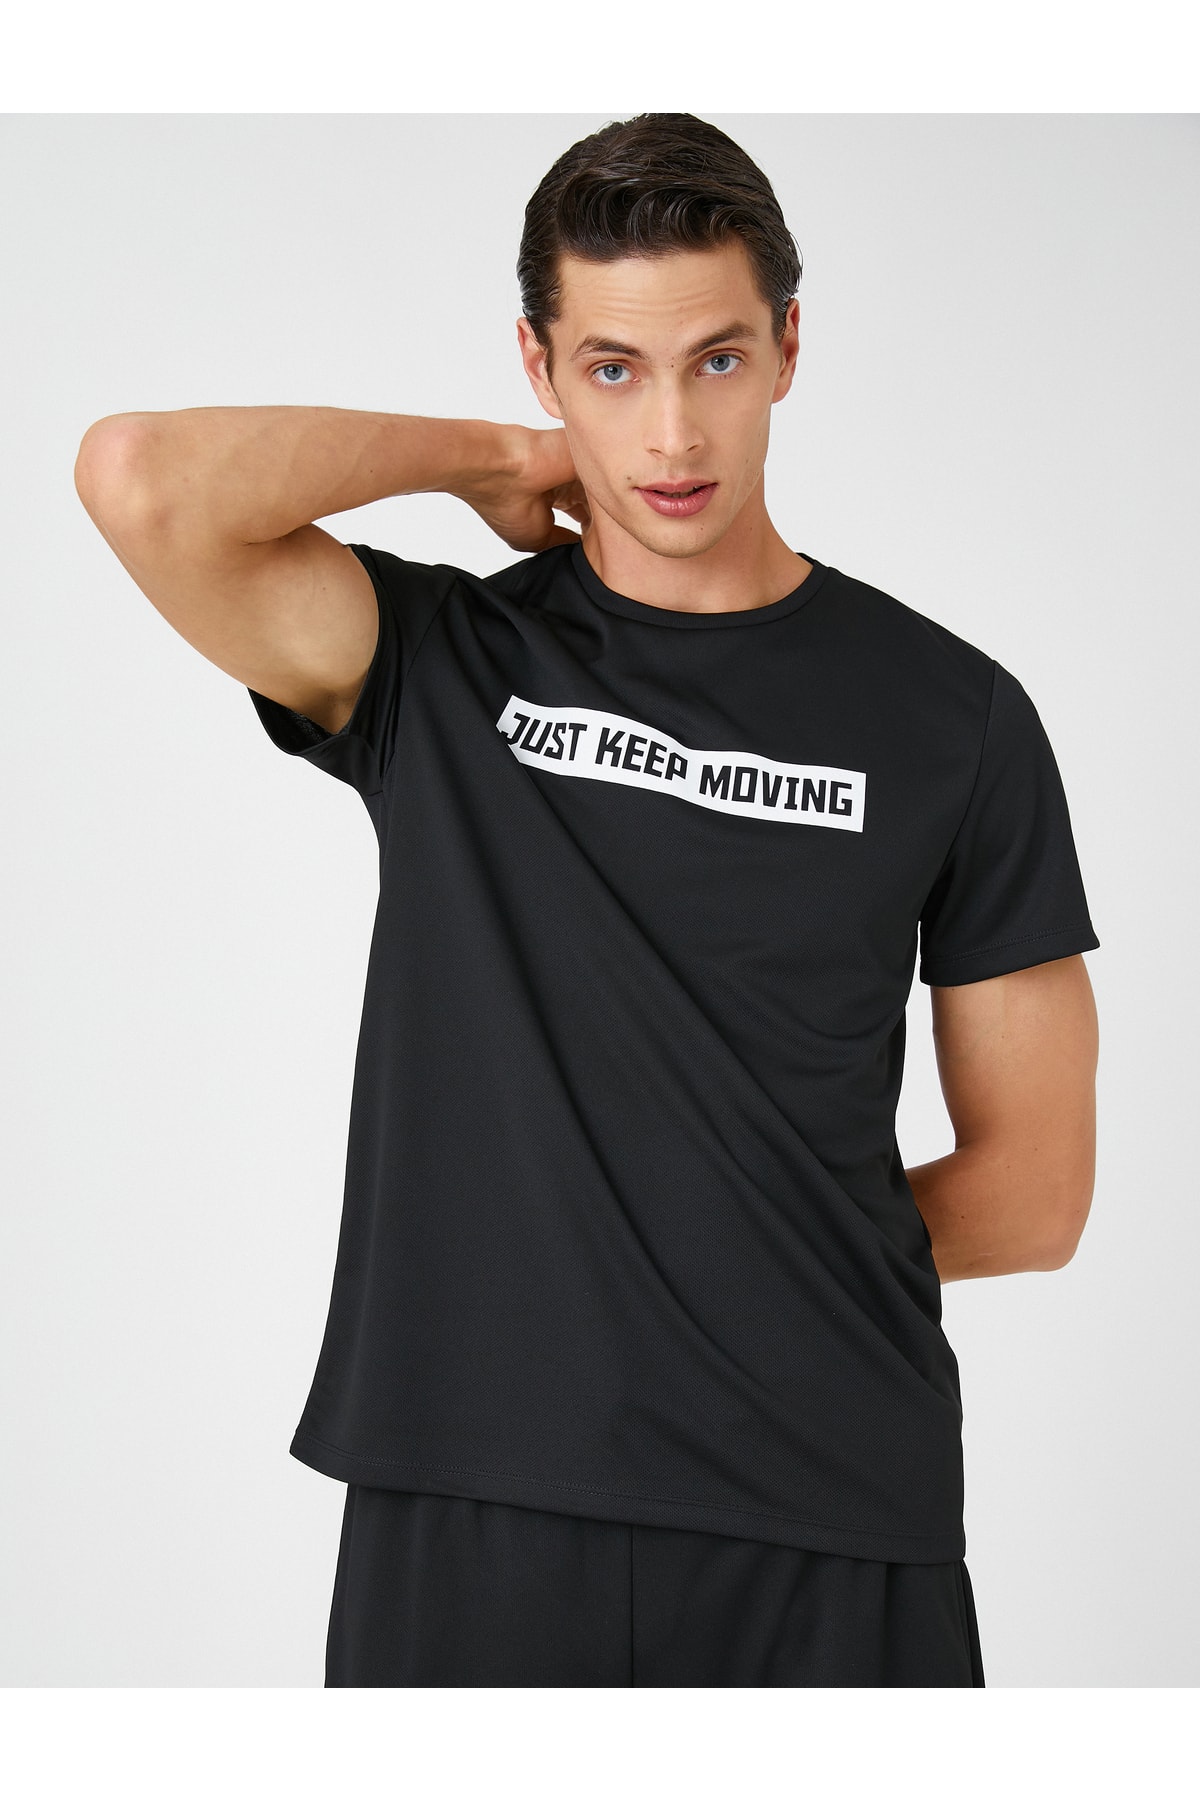 Levně Koton Sportovní tričko Motto Tištěný Krátký rukáv Posádka Prodyšná tkanina